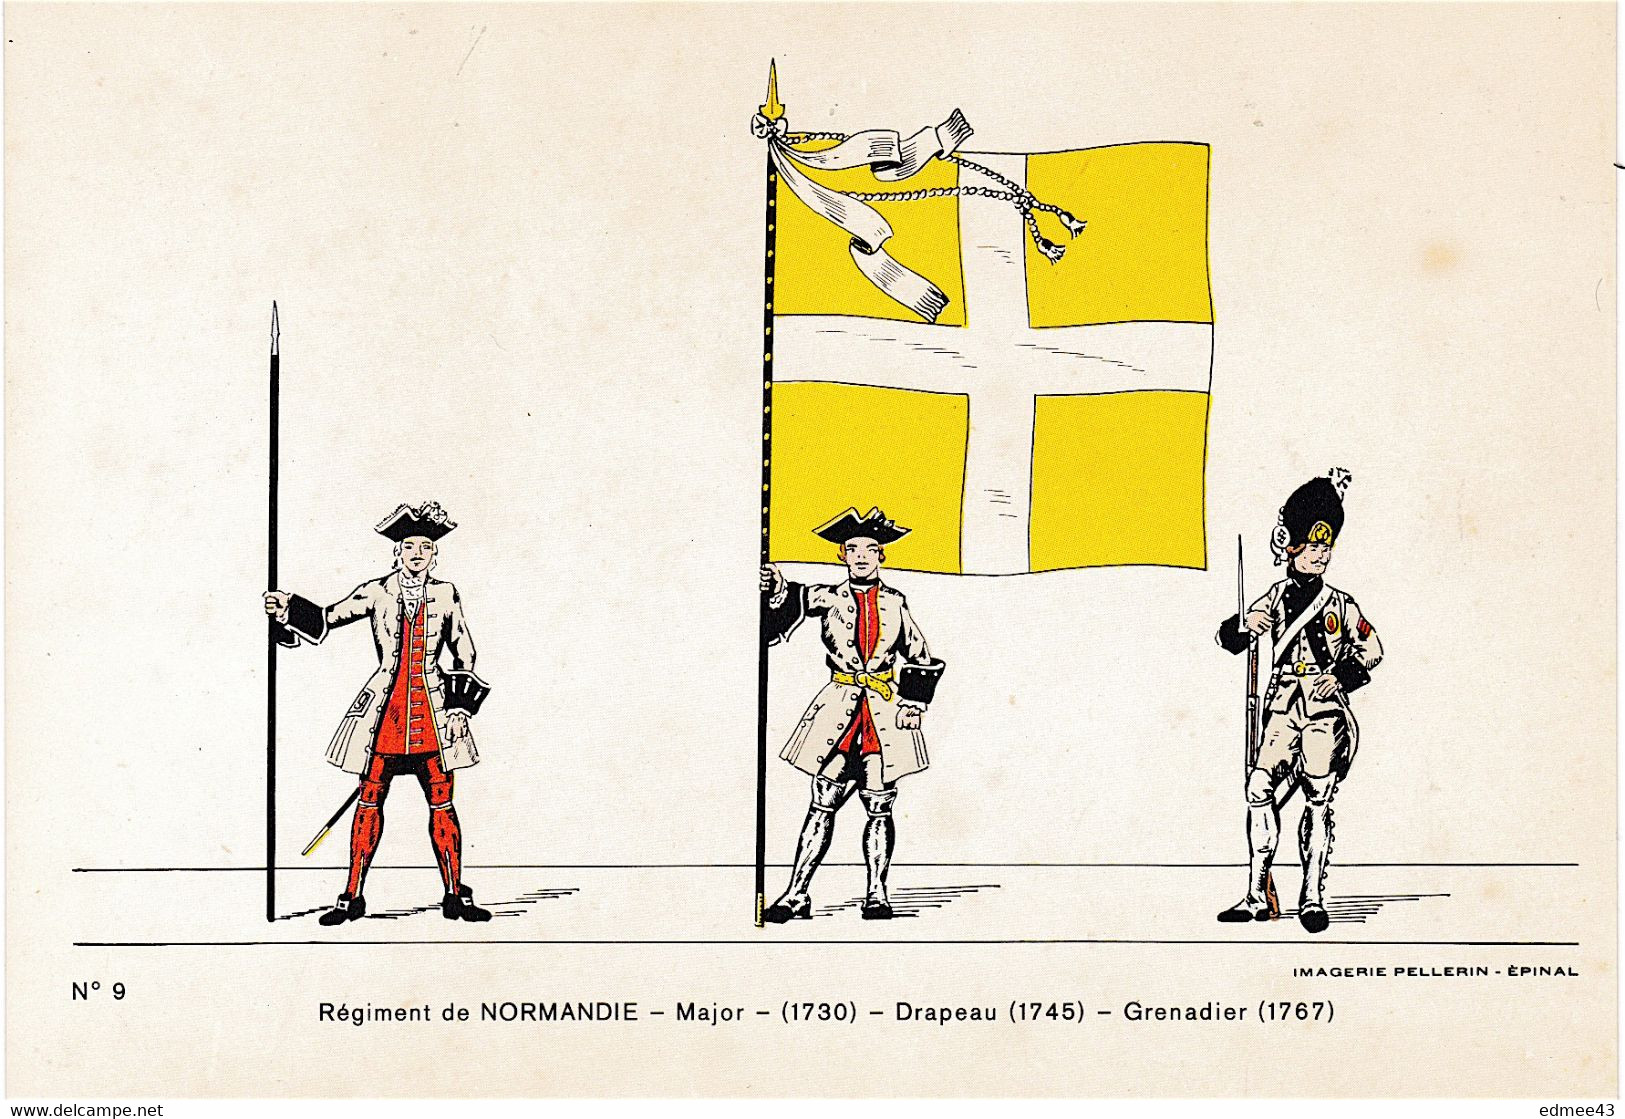 Jolie CP Série éditée En 1978 Imagerie Pellerin, N°9 Régiment De Normandie,18e Siècle - Flags